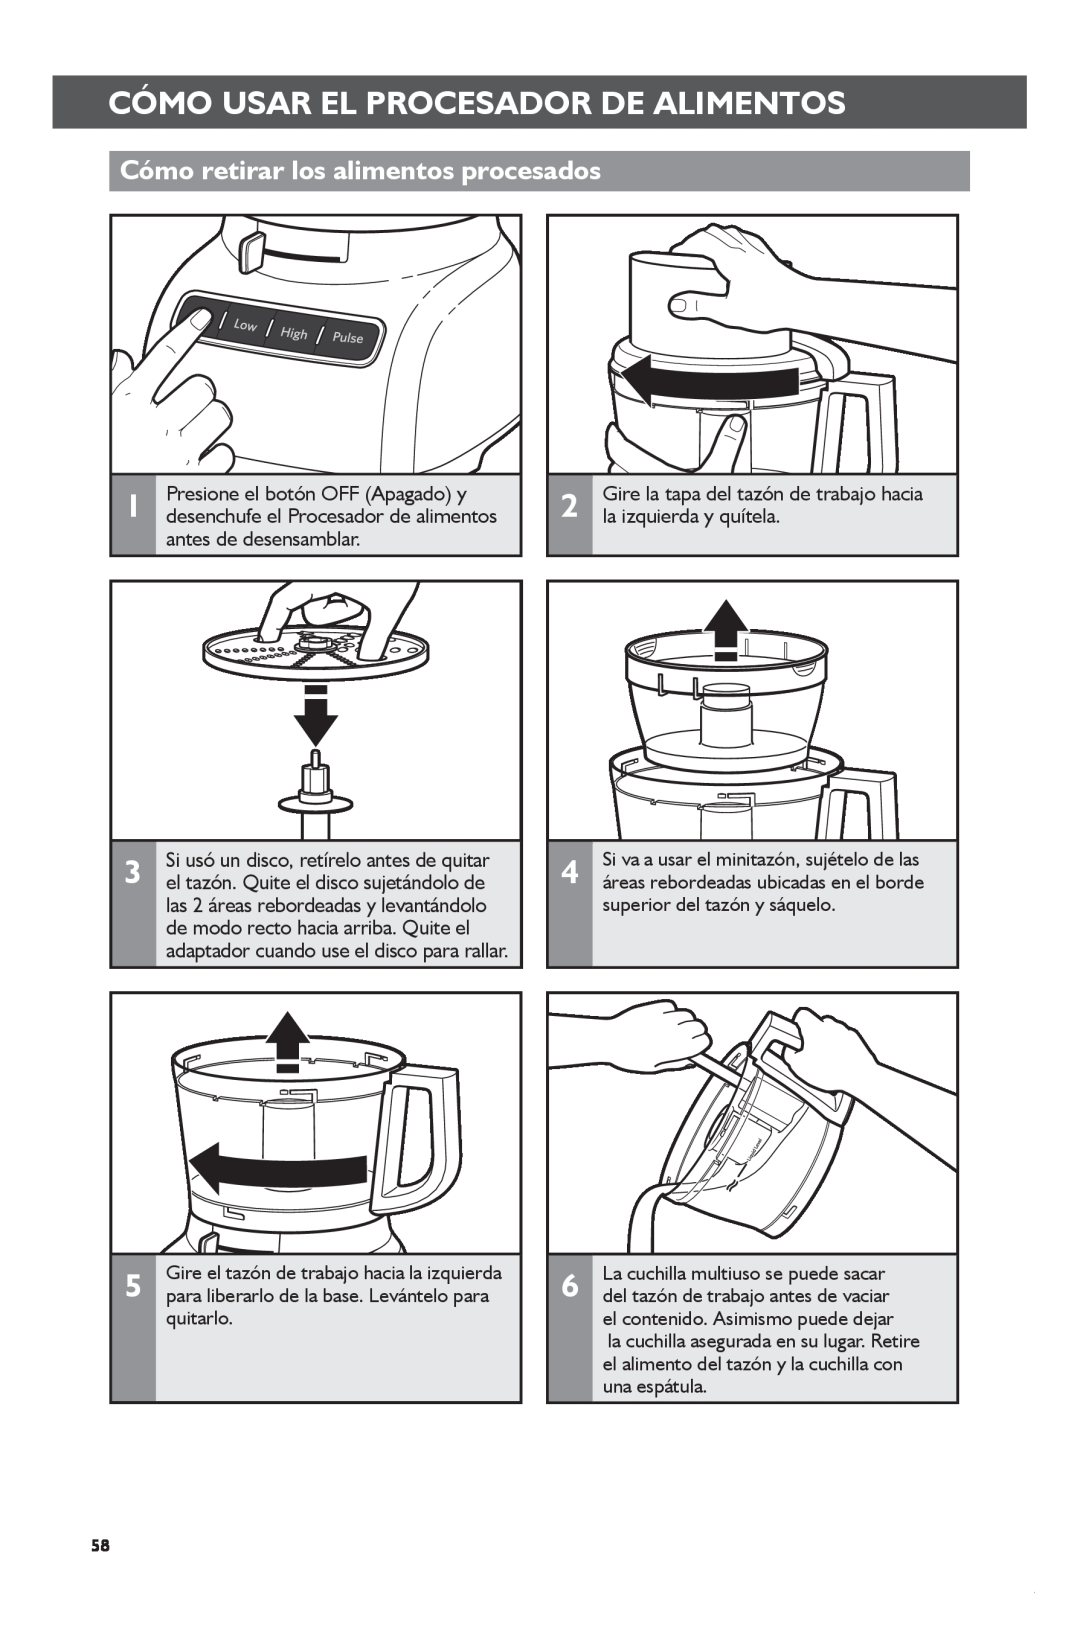 KitchenAid KFP1133 manual Cómo retirar los alimentos procesados, Cómomd +Usarshiftelclickprocesadorto Changedecopyalimentos 